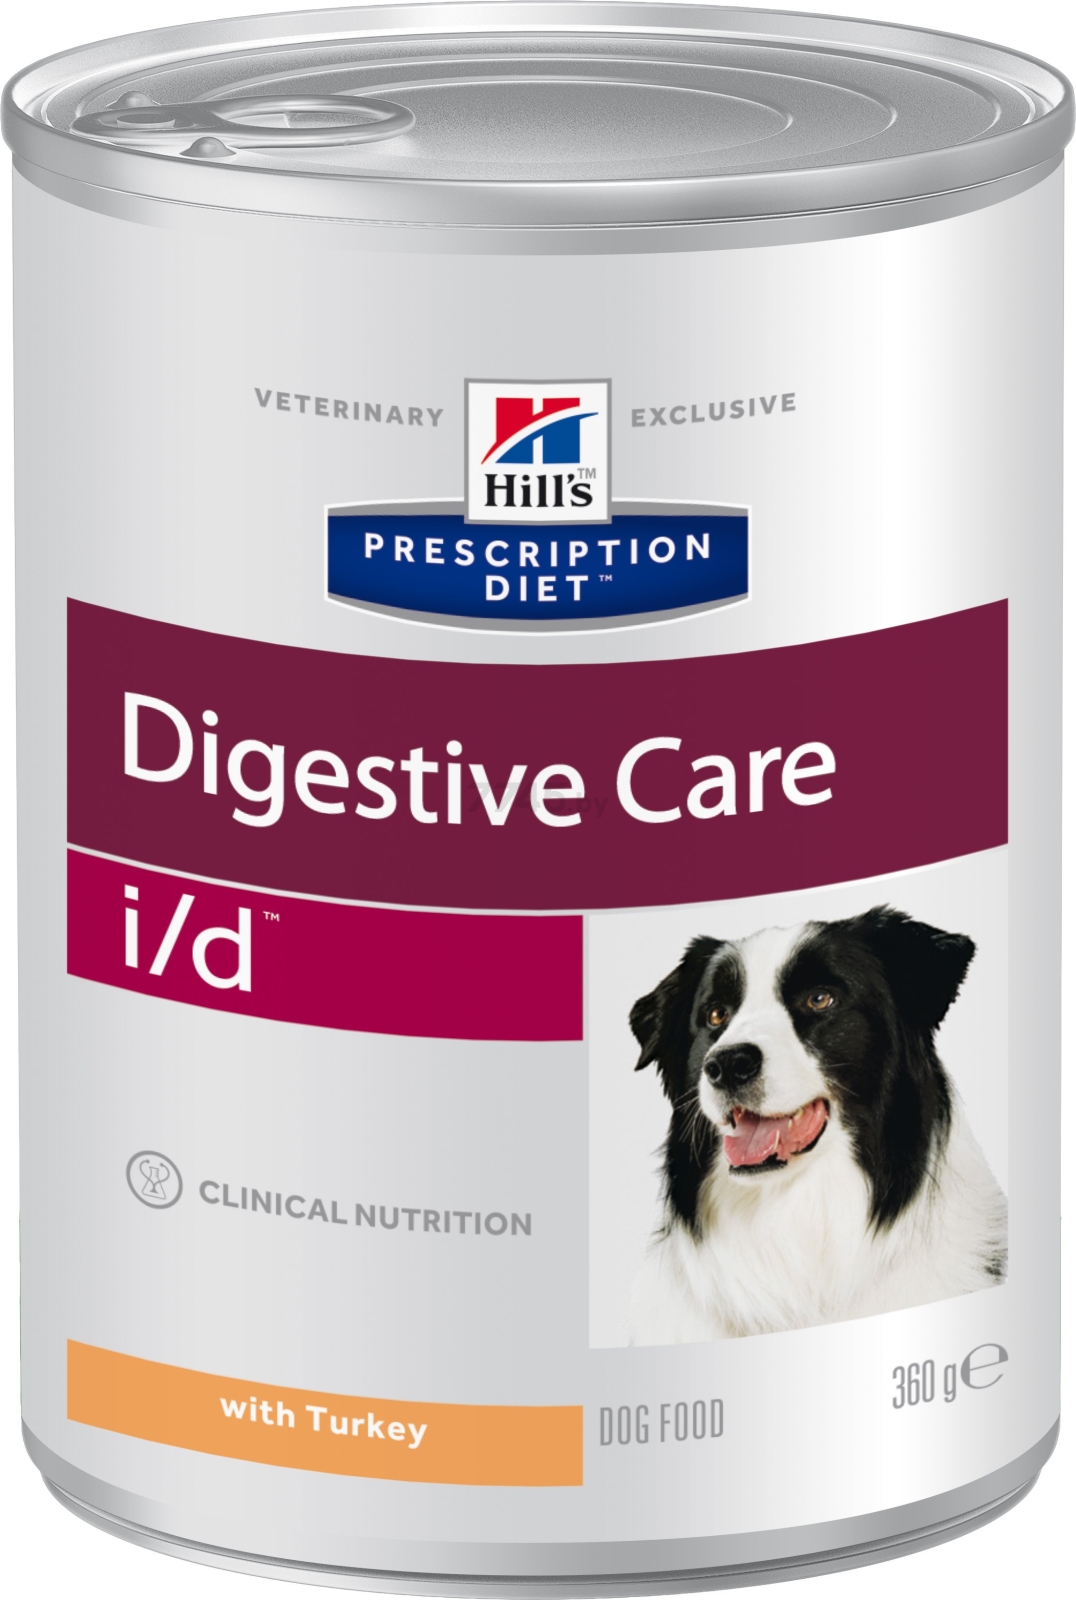 Влажный корм для собак HILL'S Prescription Diet Canine i/d индейка консервы 360 г (8408)